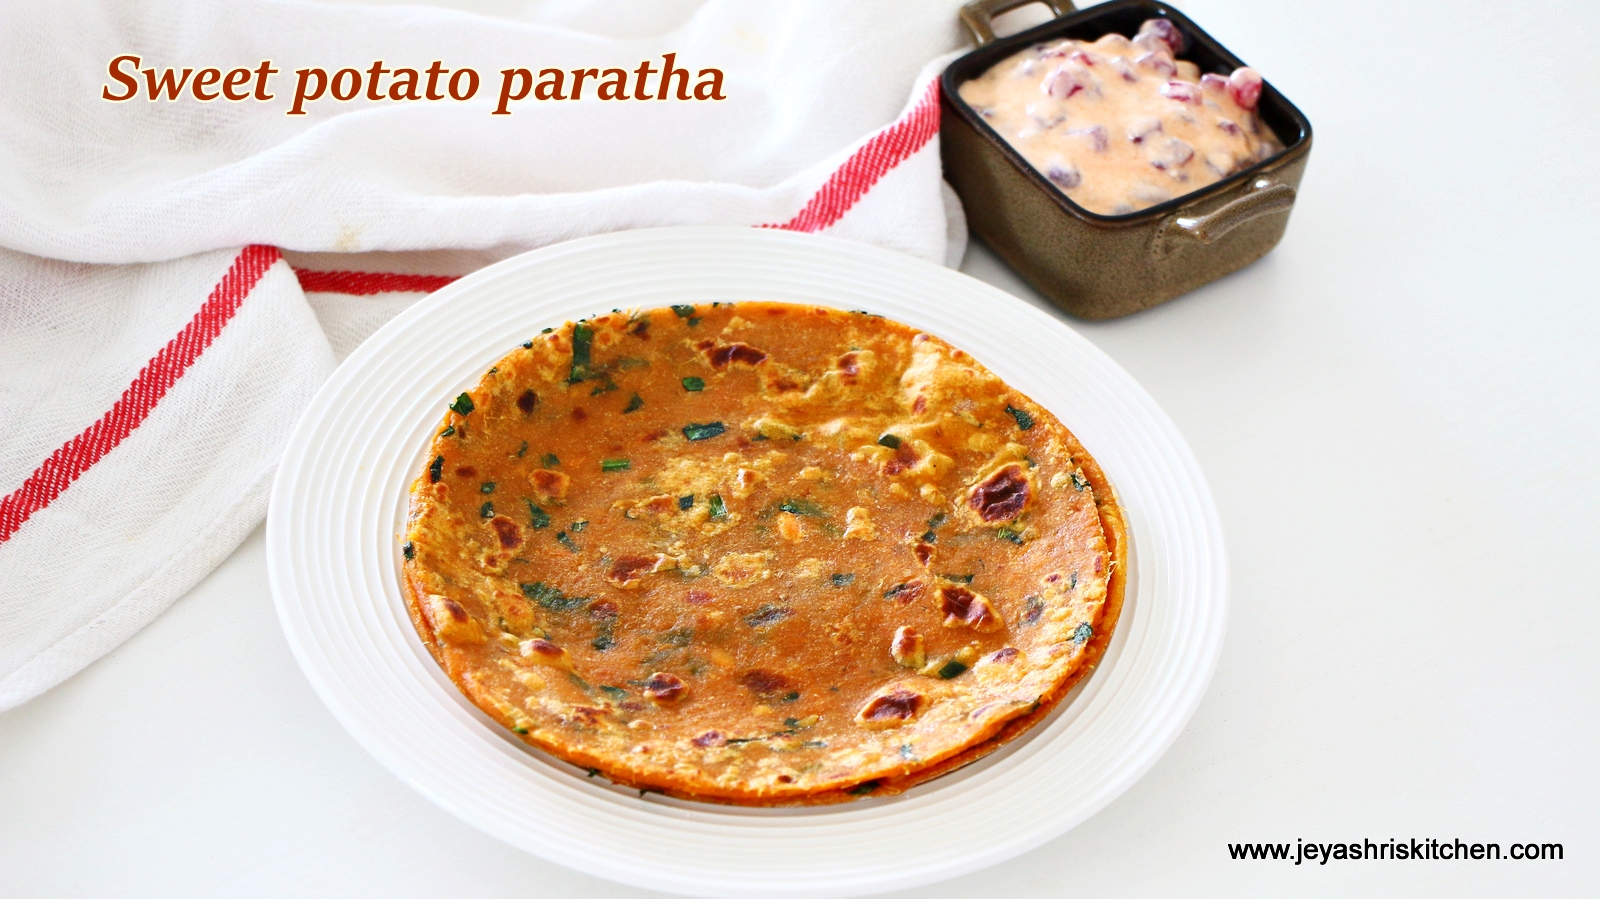 Sweet potato paratha